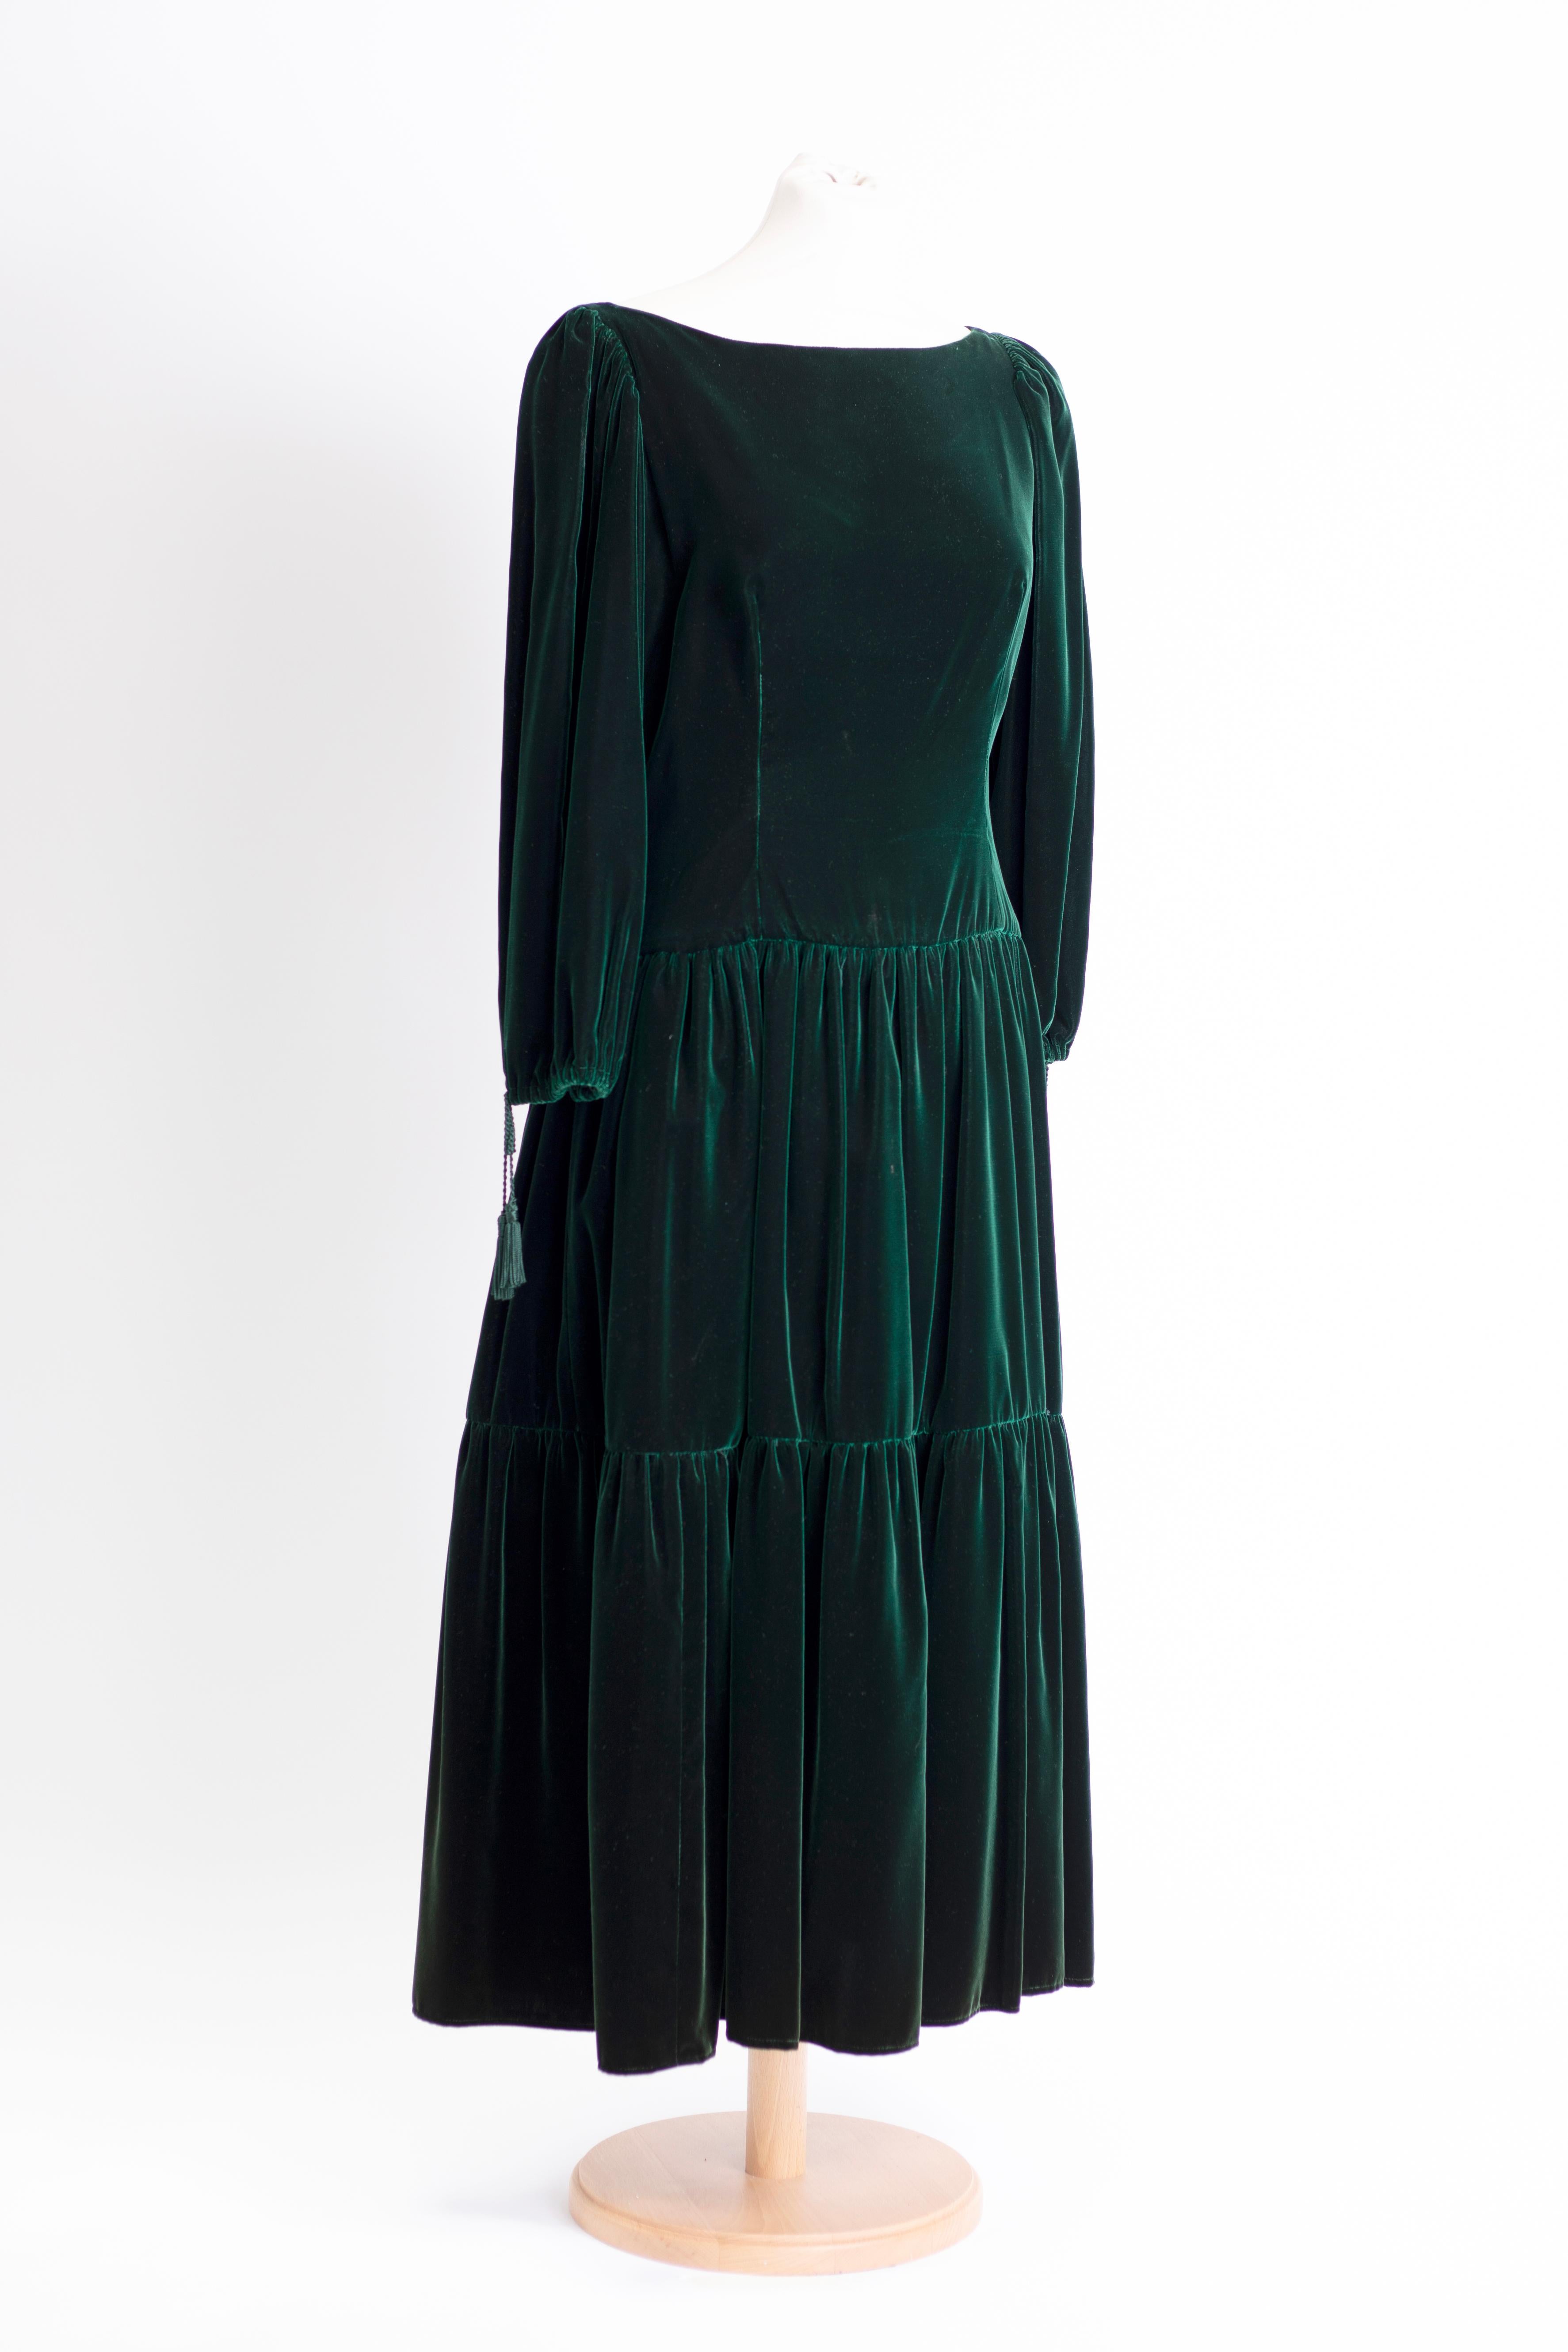 Wunderschönes Midi Kleid aus Samt mit 3/4 Puffärmeln und gewebten Quasten. mit Bootsausschnitt.

Óscar Arístides Renta Fiallo (22. Juli 1932 - 20. Oktober 2014), beruflich bekannt als Oscar de la Renta, war ein dominikanischer Modedesigner. Geboren